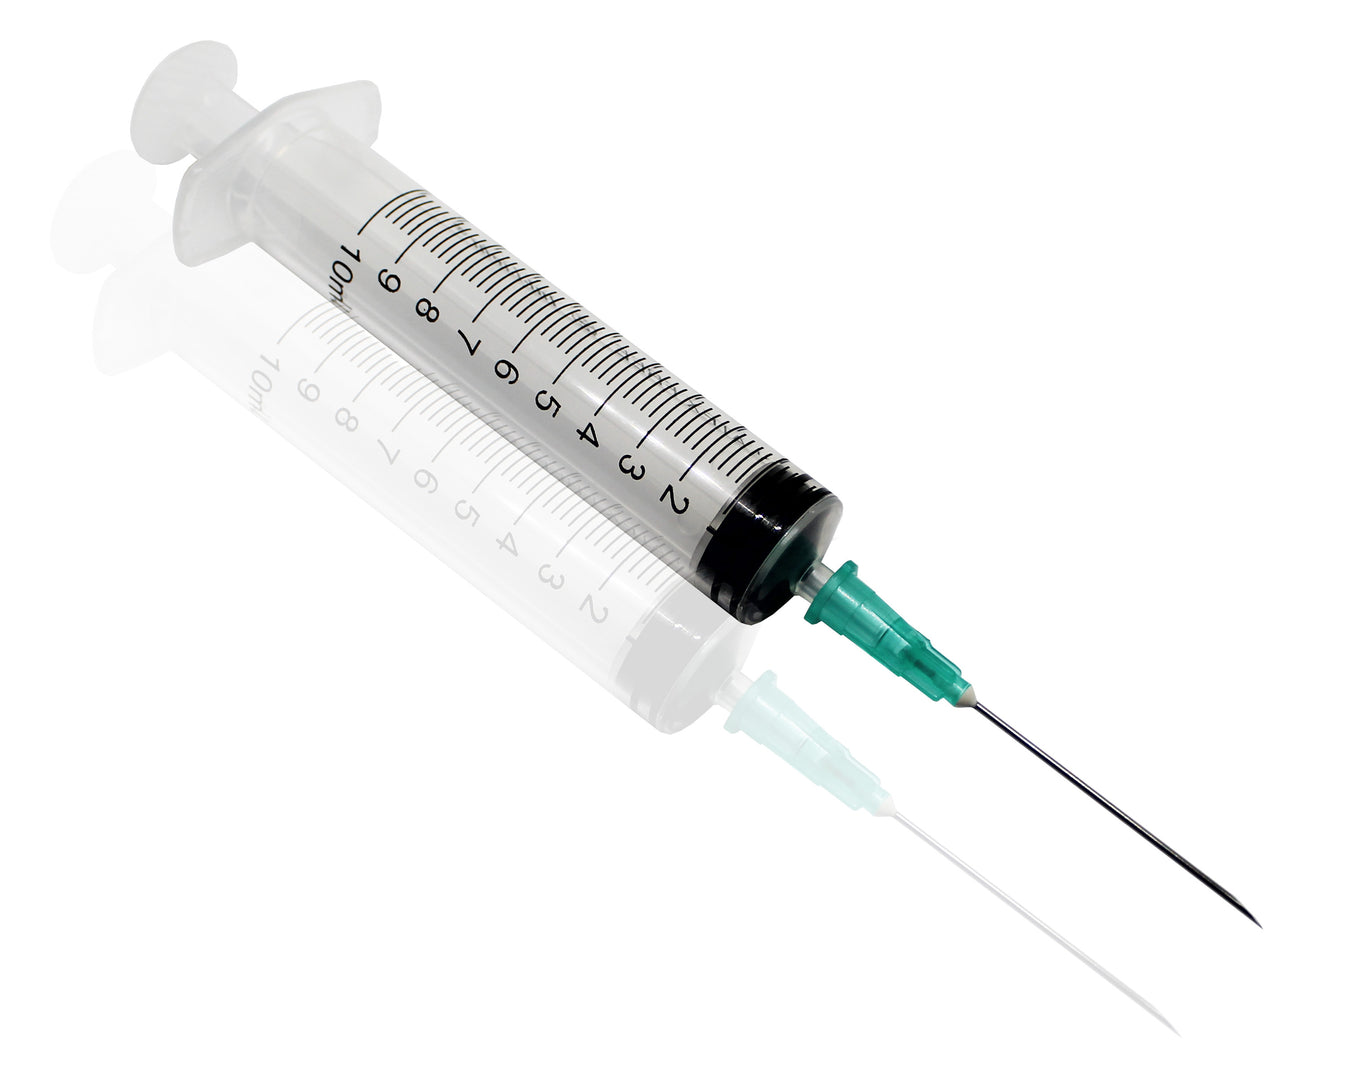 10ml syringe with 21g hypodermic needle